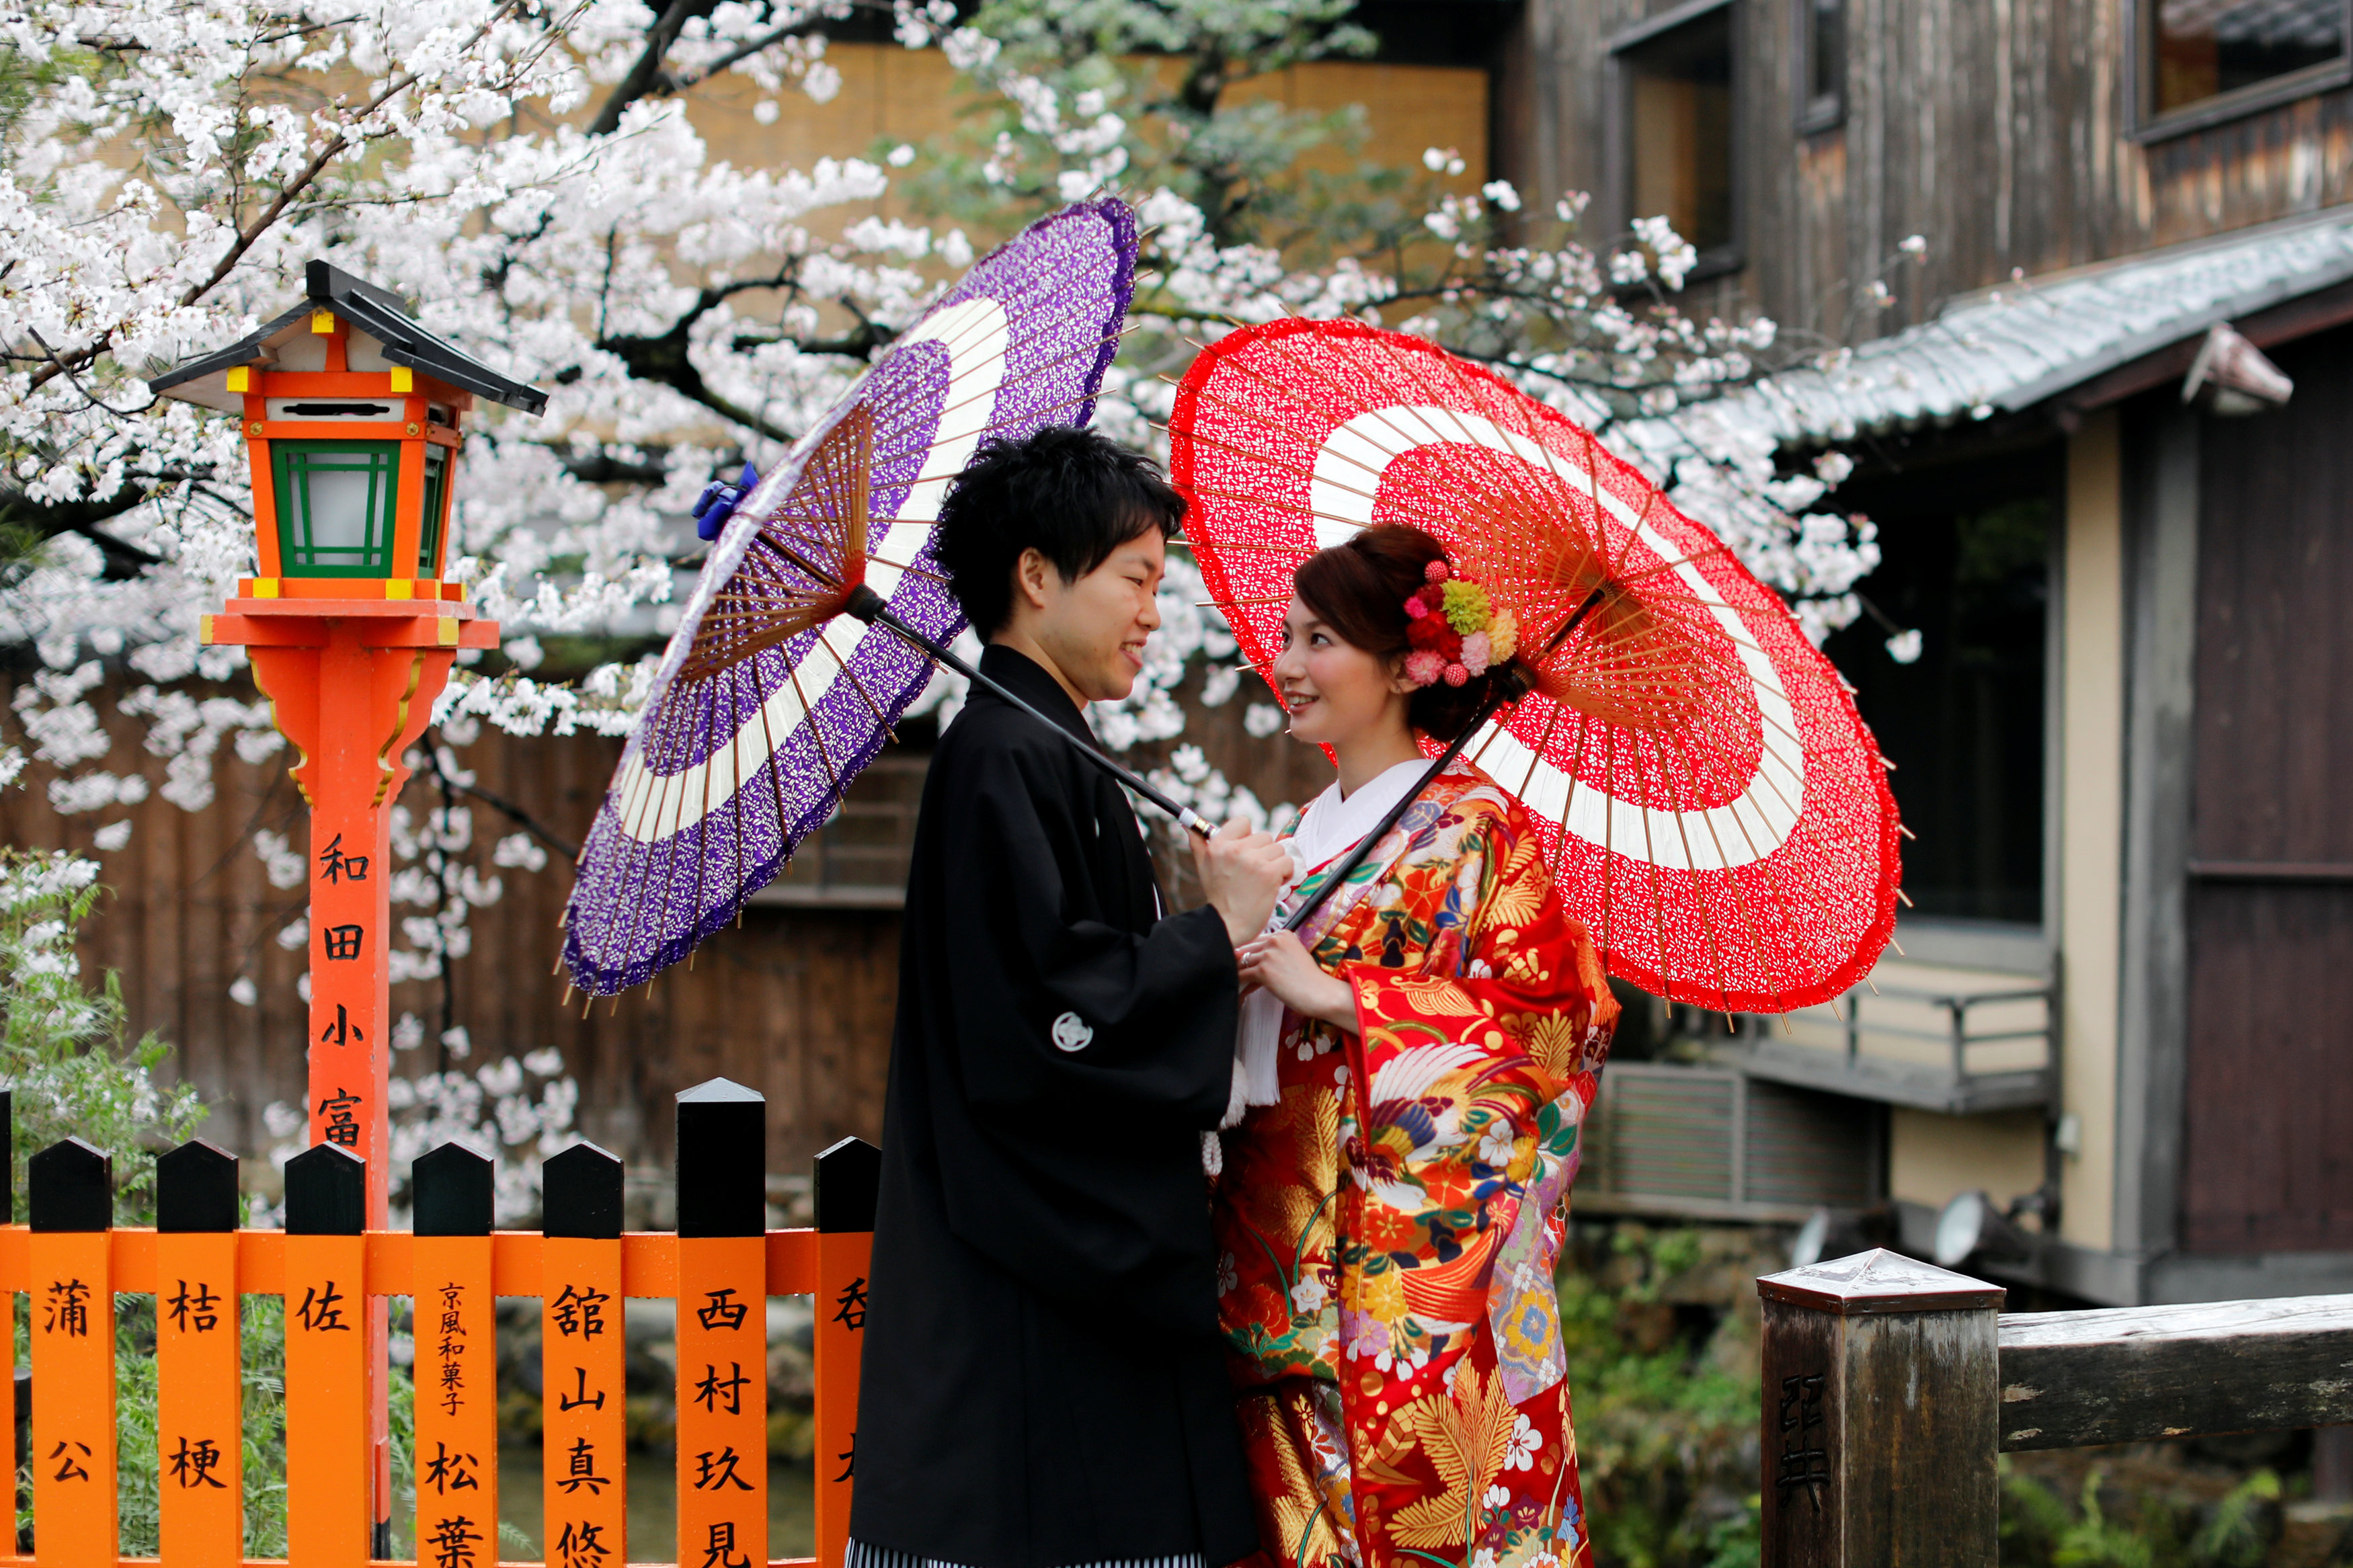 بالصور.. احتفالات اليابانيين بعيد الربيع وسط أزهار الكرز - اليوم ...